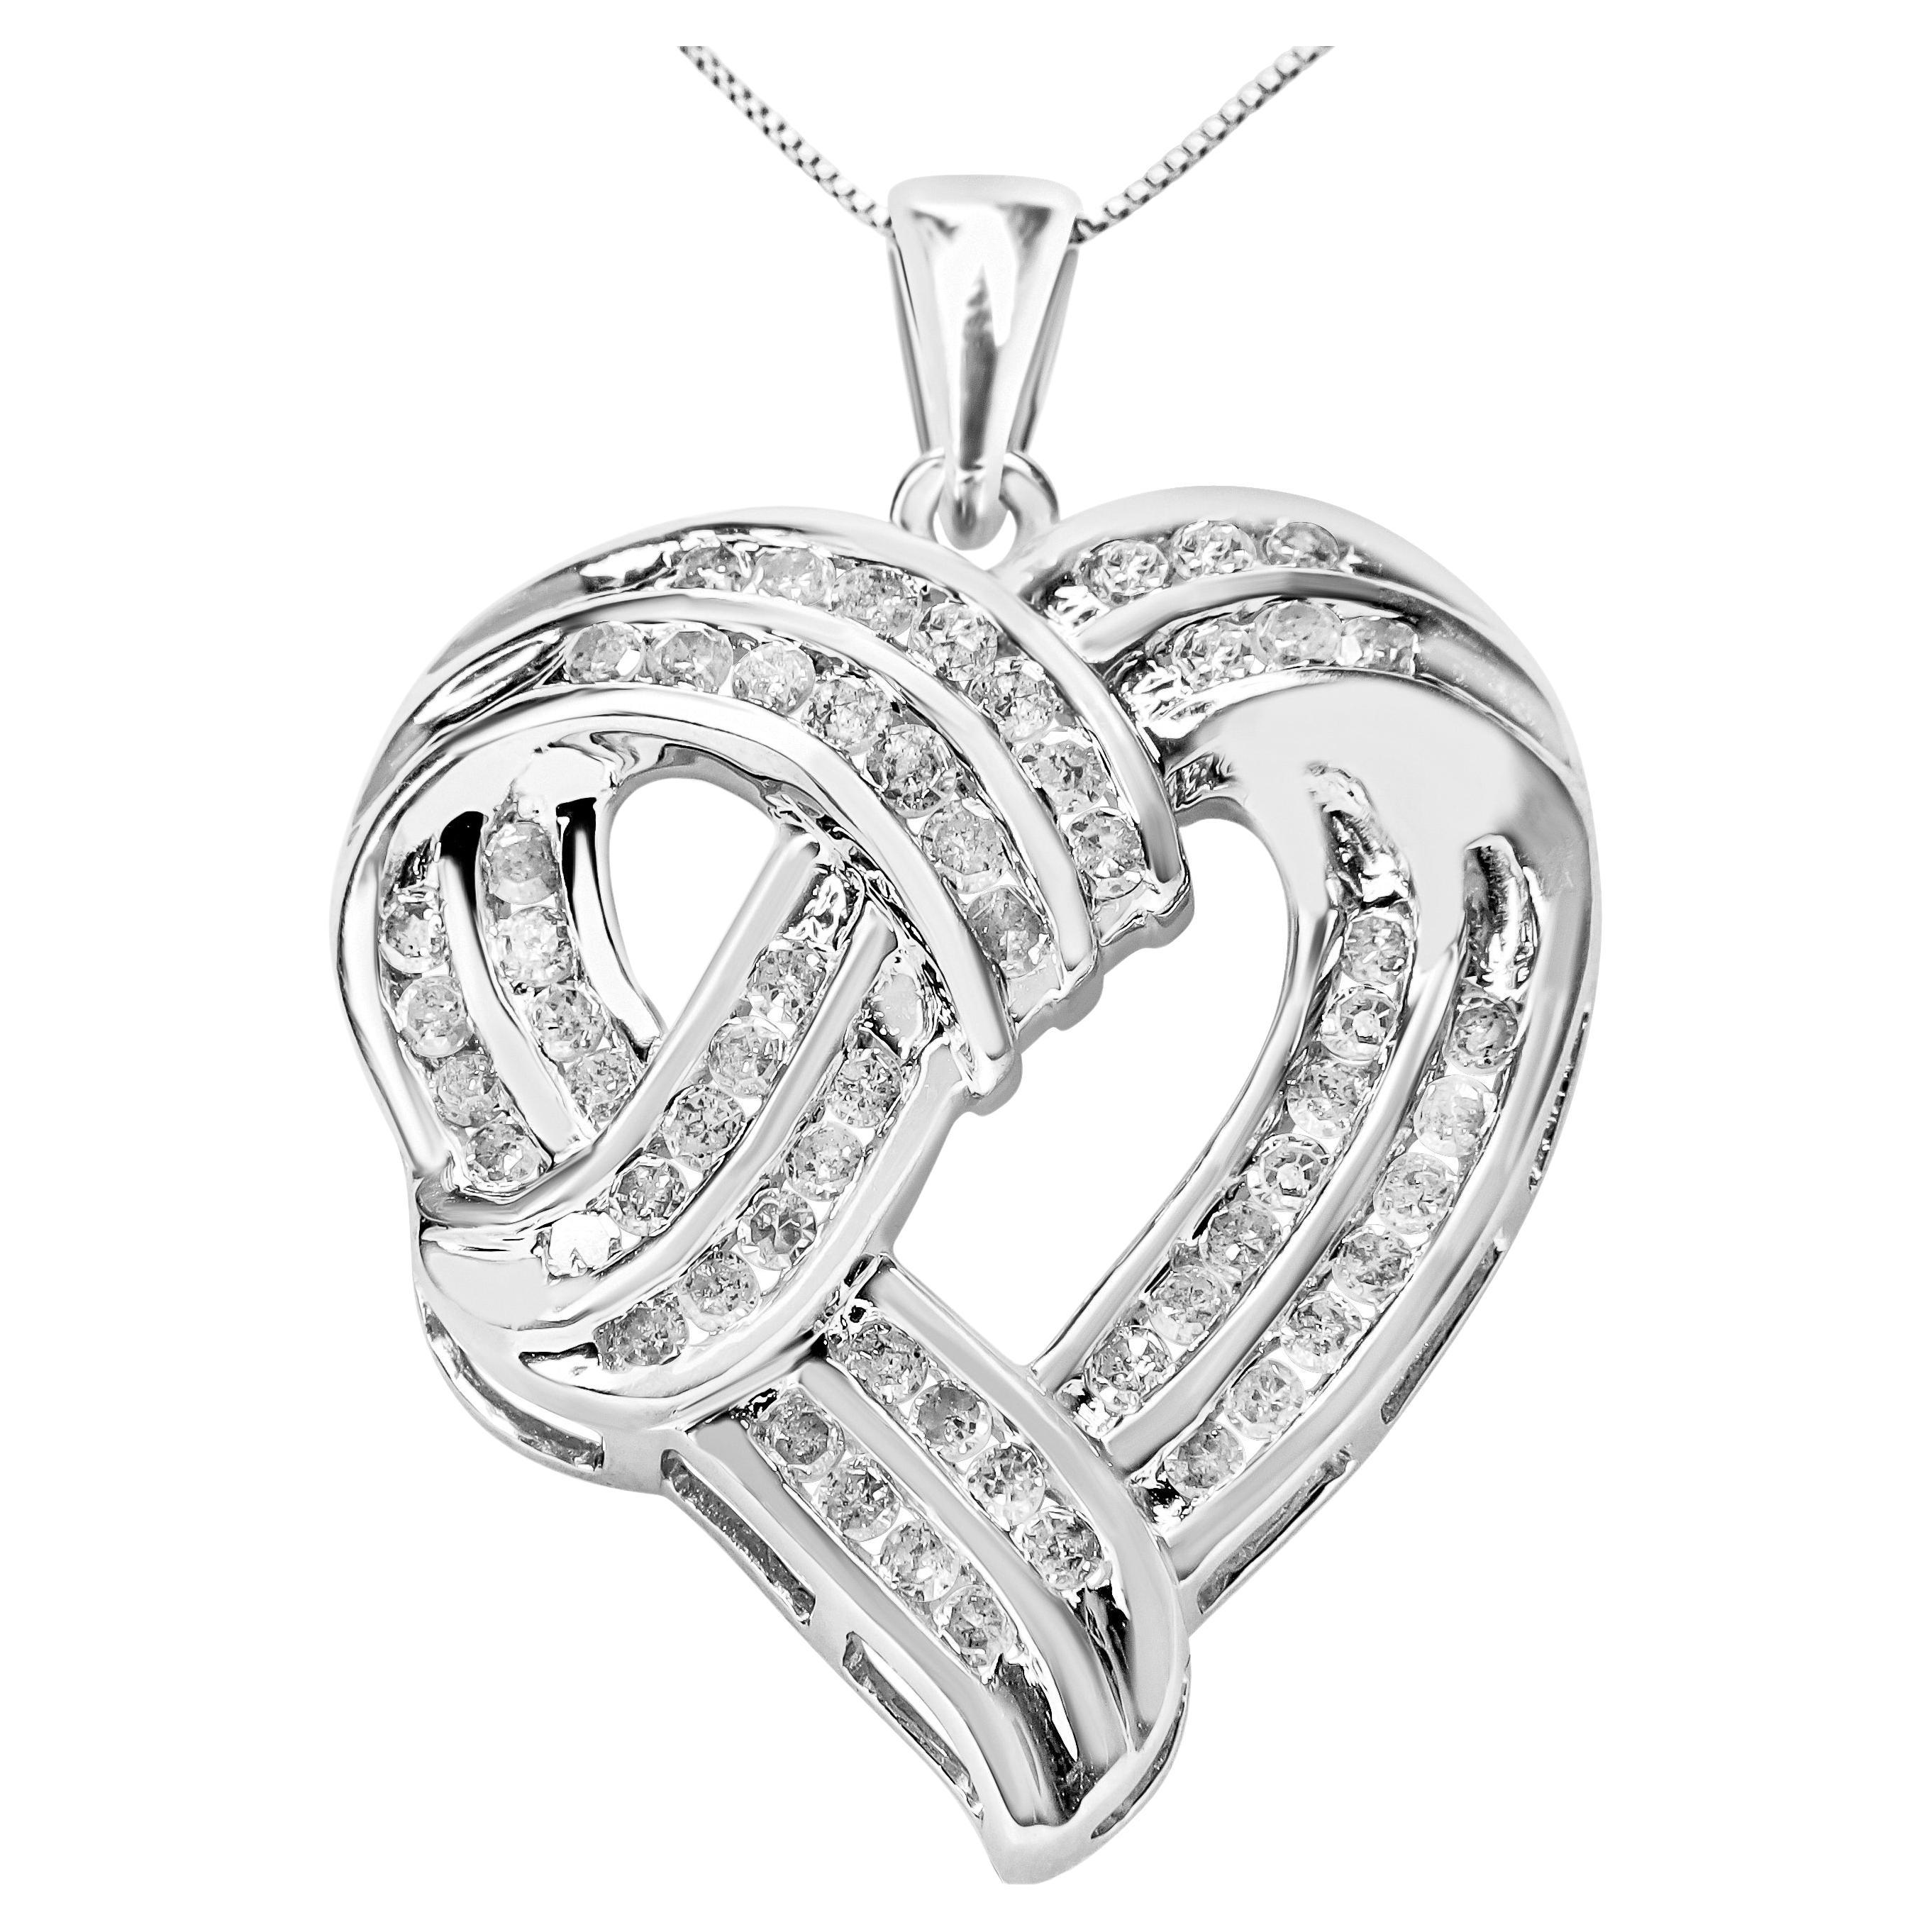 Halskette mit Herzanhänger aus Silber 1 1/4 Karat rundem Diamanten im durchbrochenen Bandgewebe mit Herzanhänger